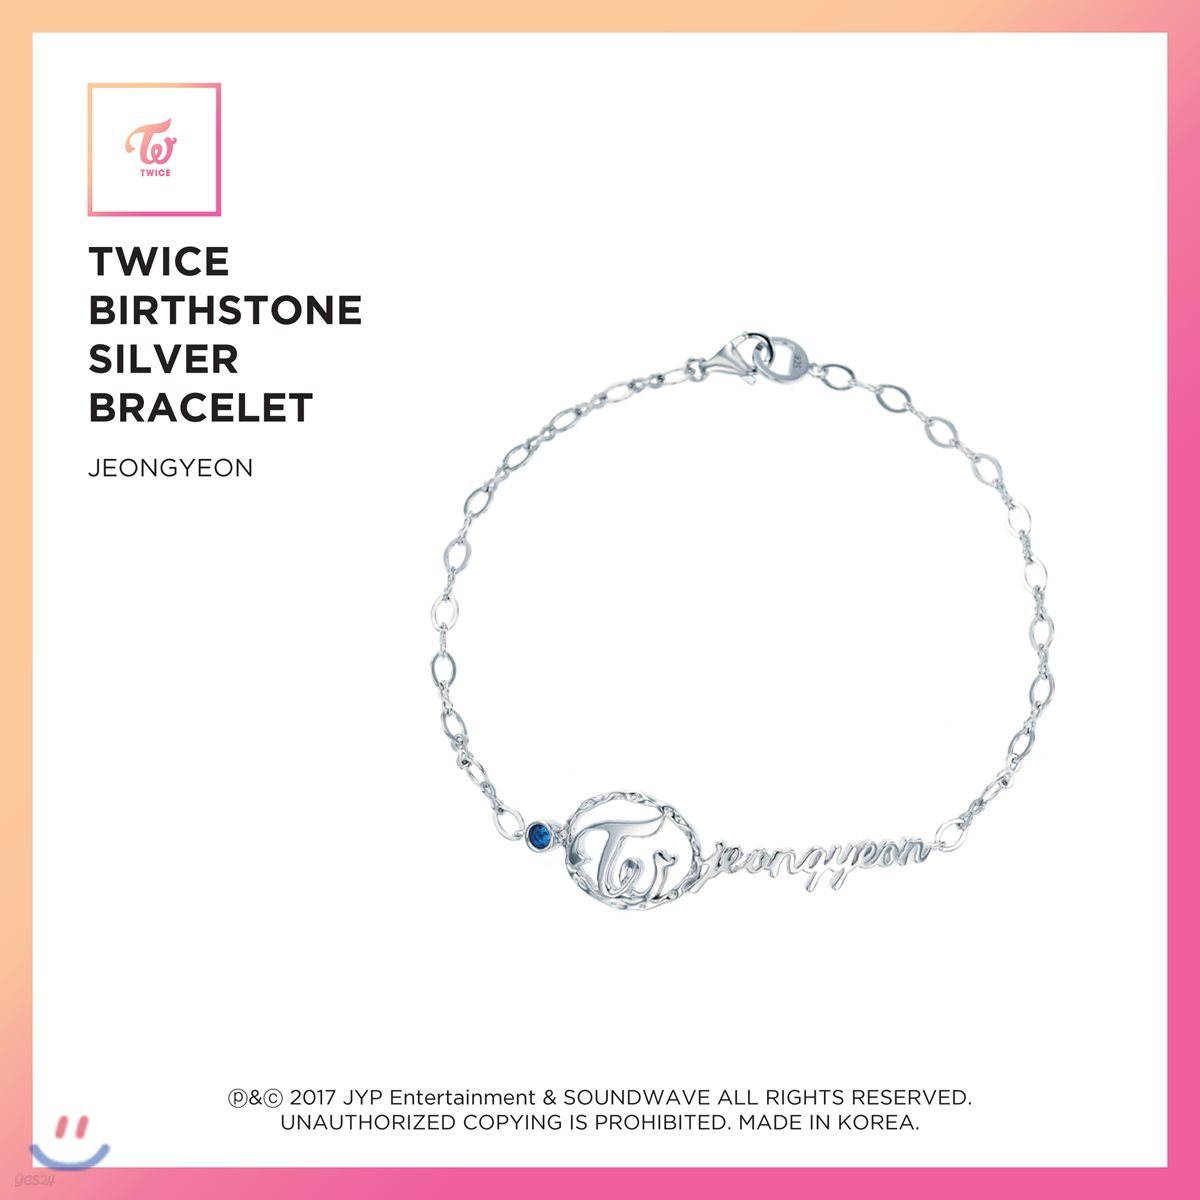 트와이스 (TWICE) - TWICE Birthstone Silver Bracelet [Jeongyeon]